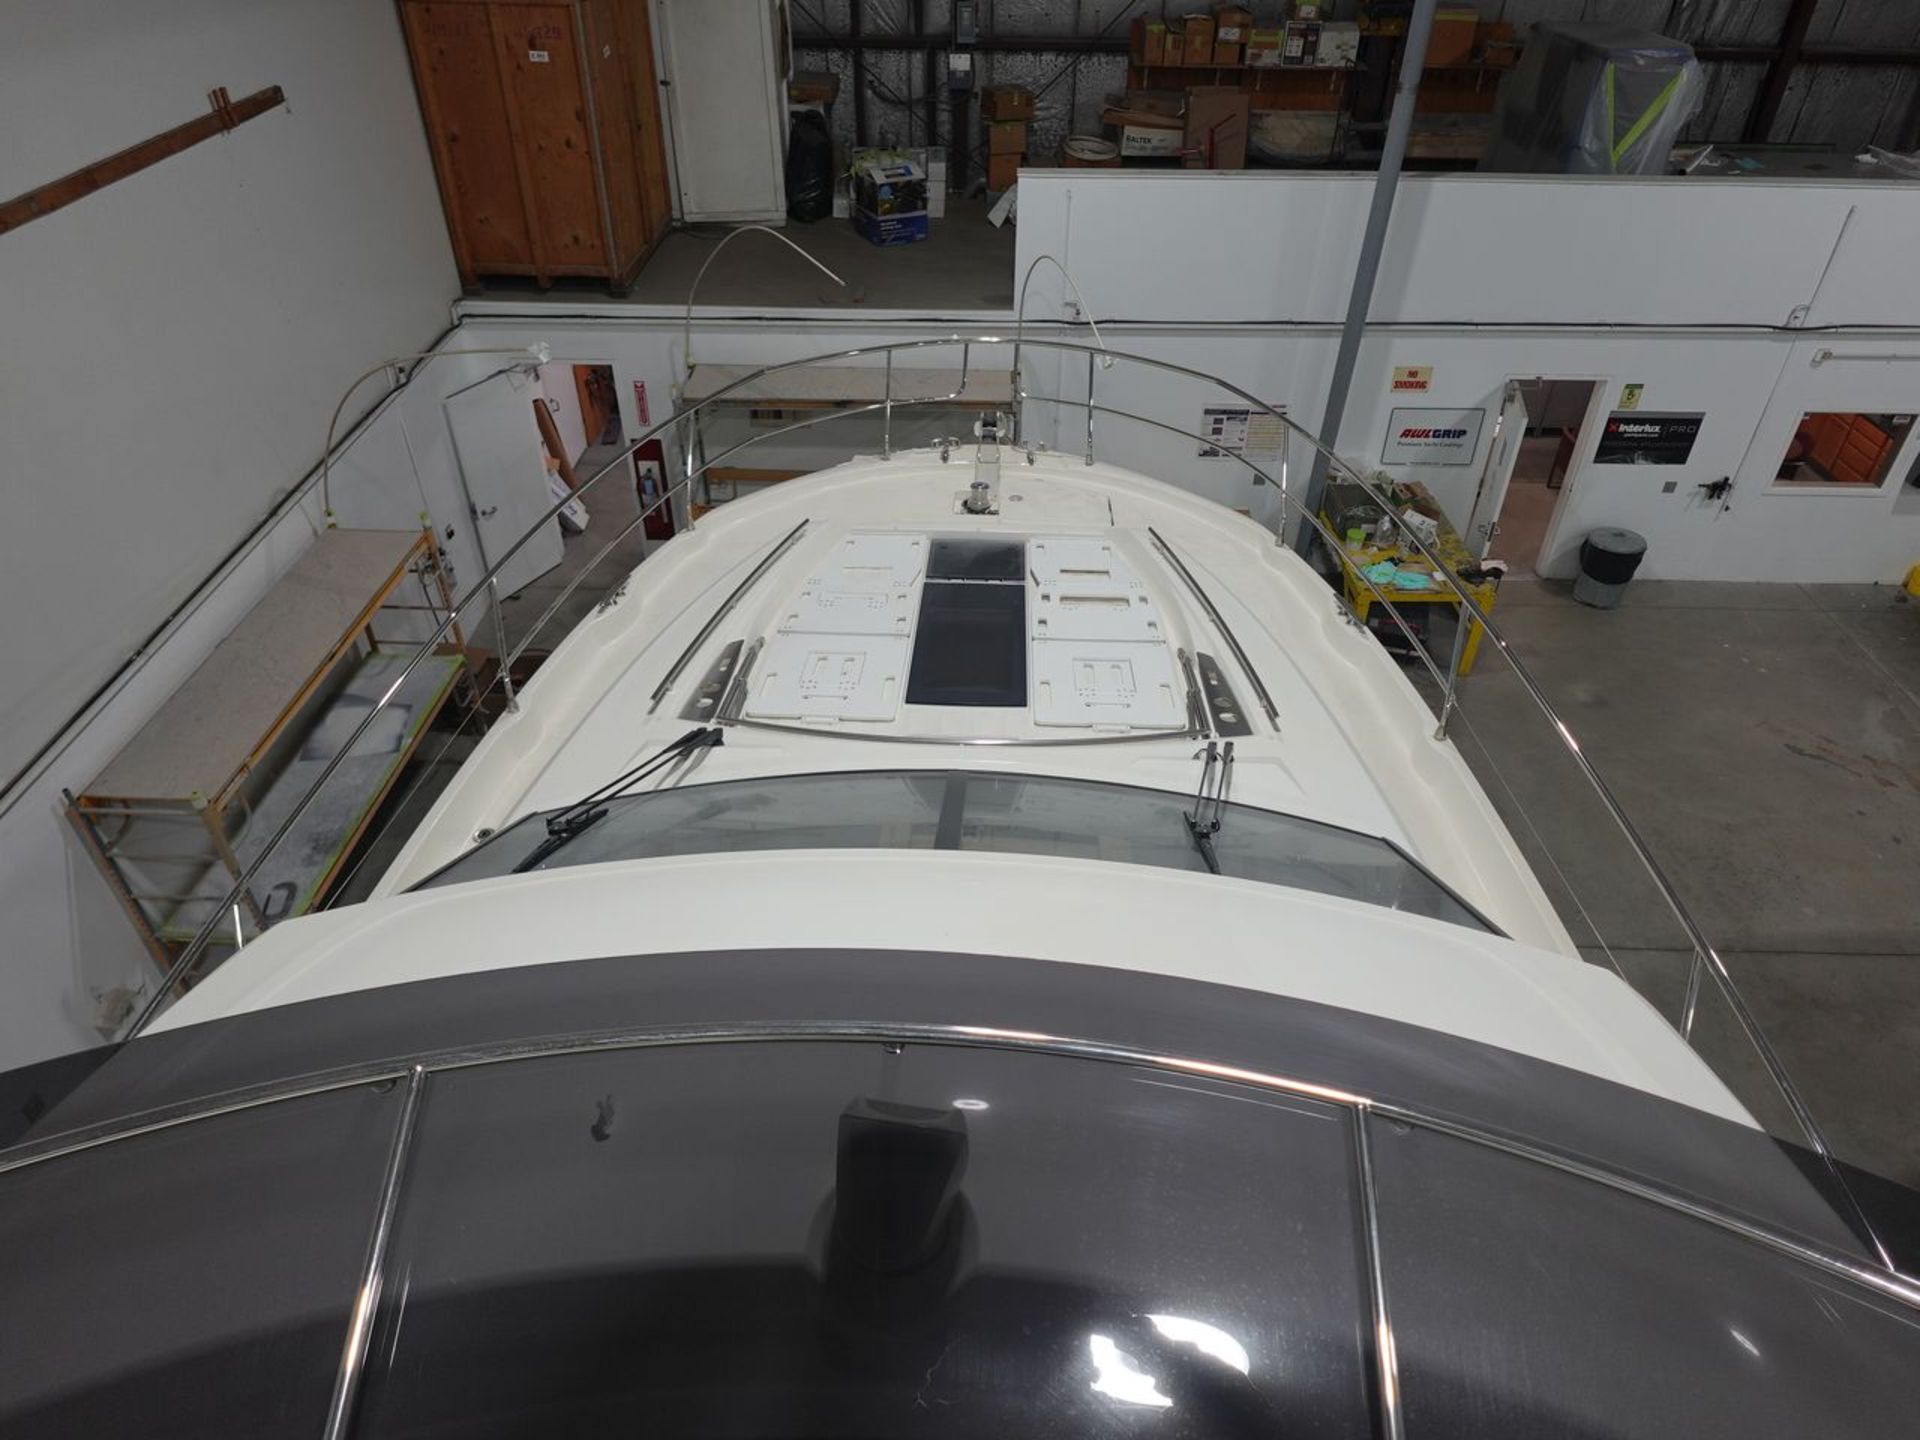 2019 Prestige 520 Flybridge Motor Yacht; HIN: IRIWE059H819; 52.85 ft. Length, 14.75 ft. Beam, Hauled - Image 6 of 49